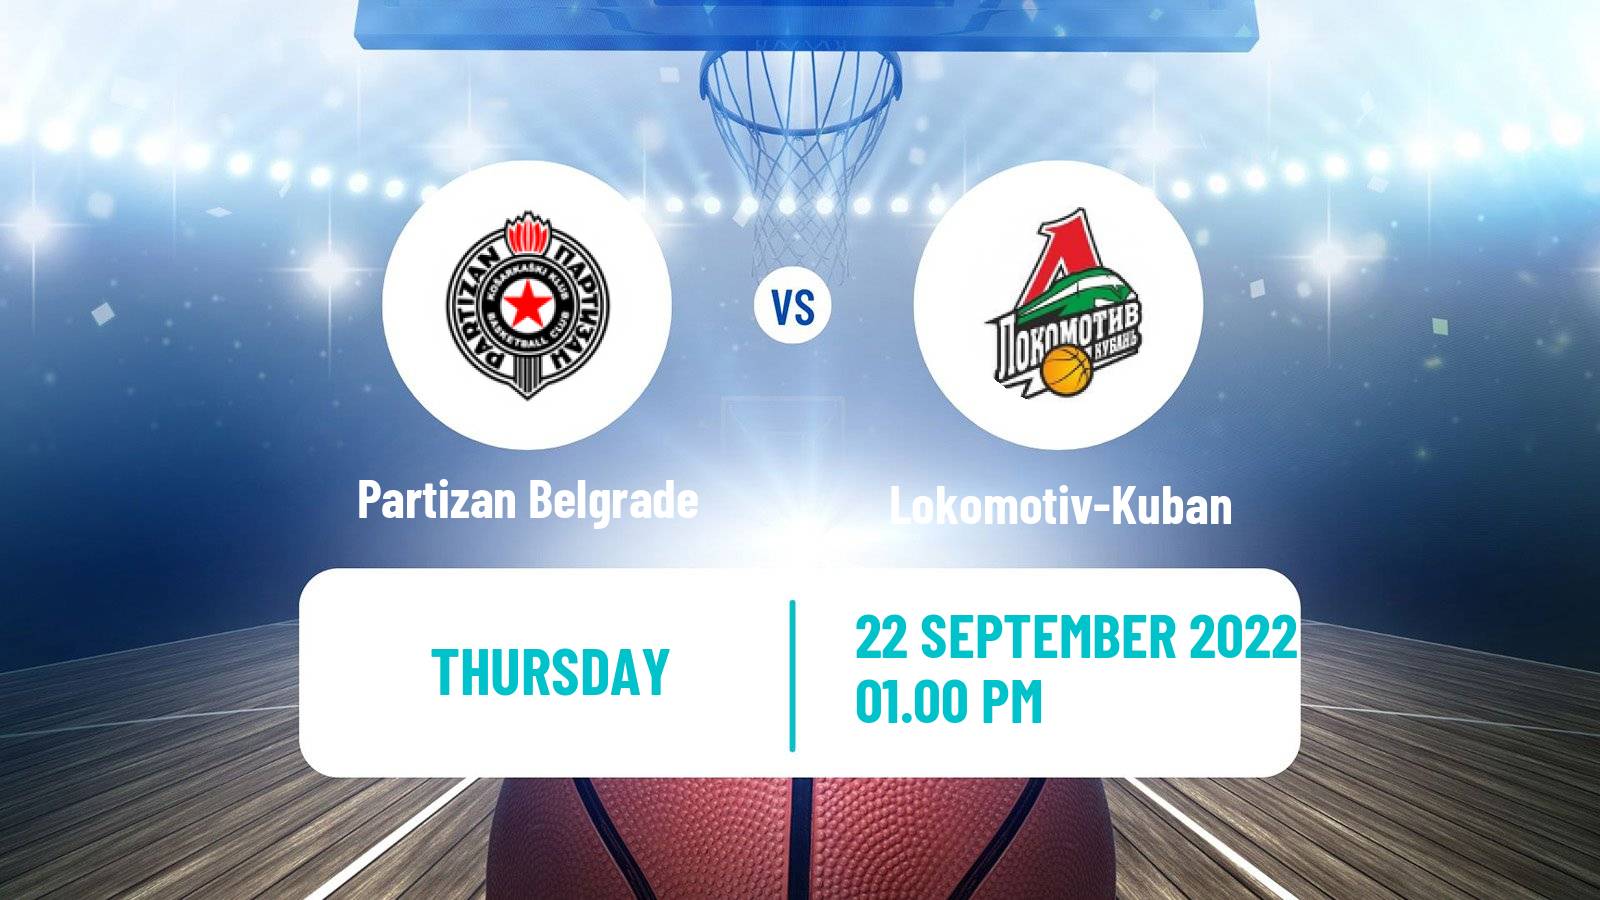 Basketball VTB Super Cup Partizan Belgrade - Lokomotiv-Kuban